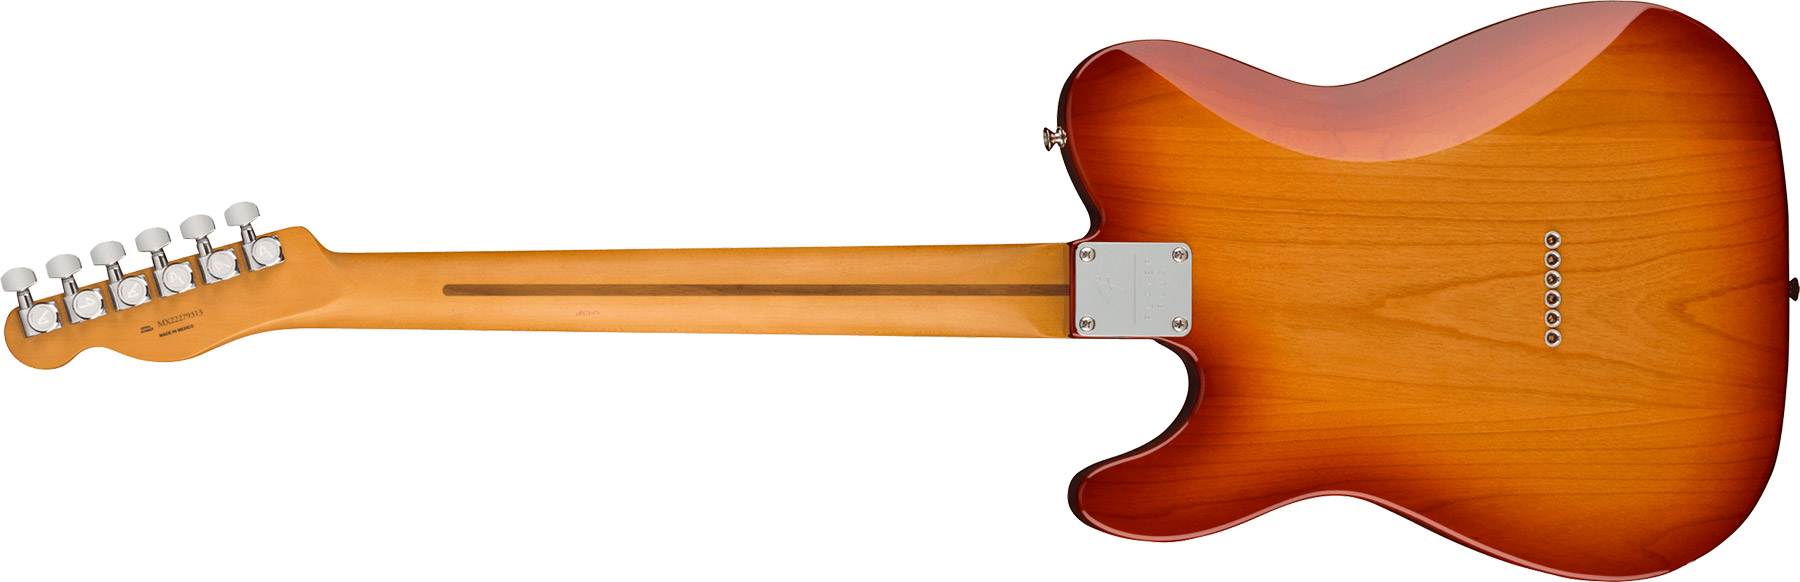 Fender Tele Player Plus Nashville Mex 2023 2s Ht Pf - Sienna Sunburst - Televorm elektrische gitaar - Variation 1